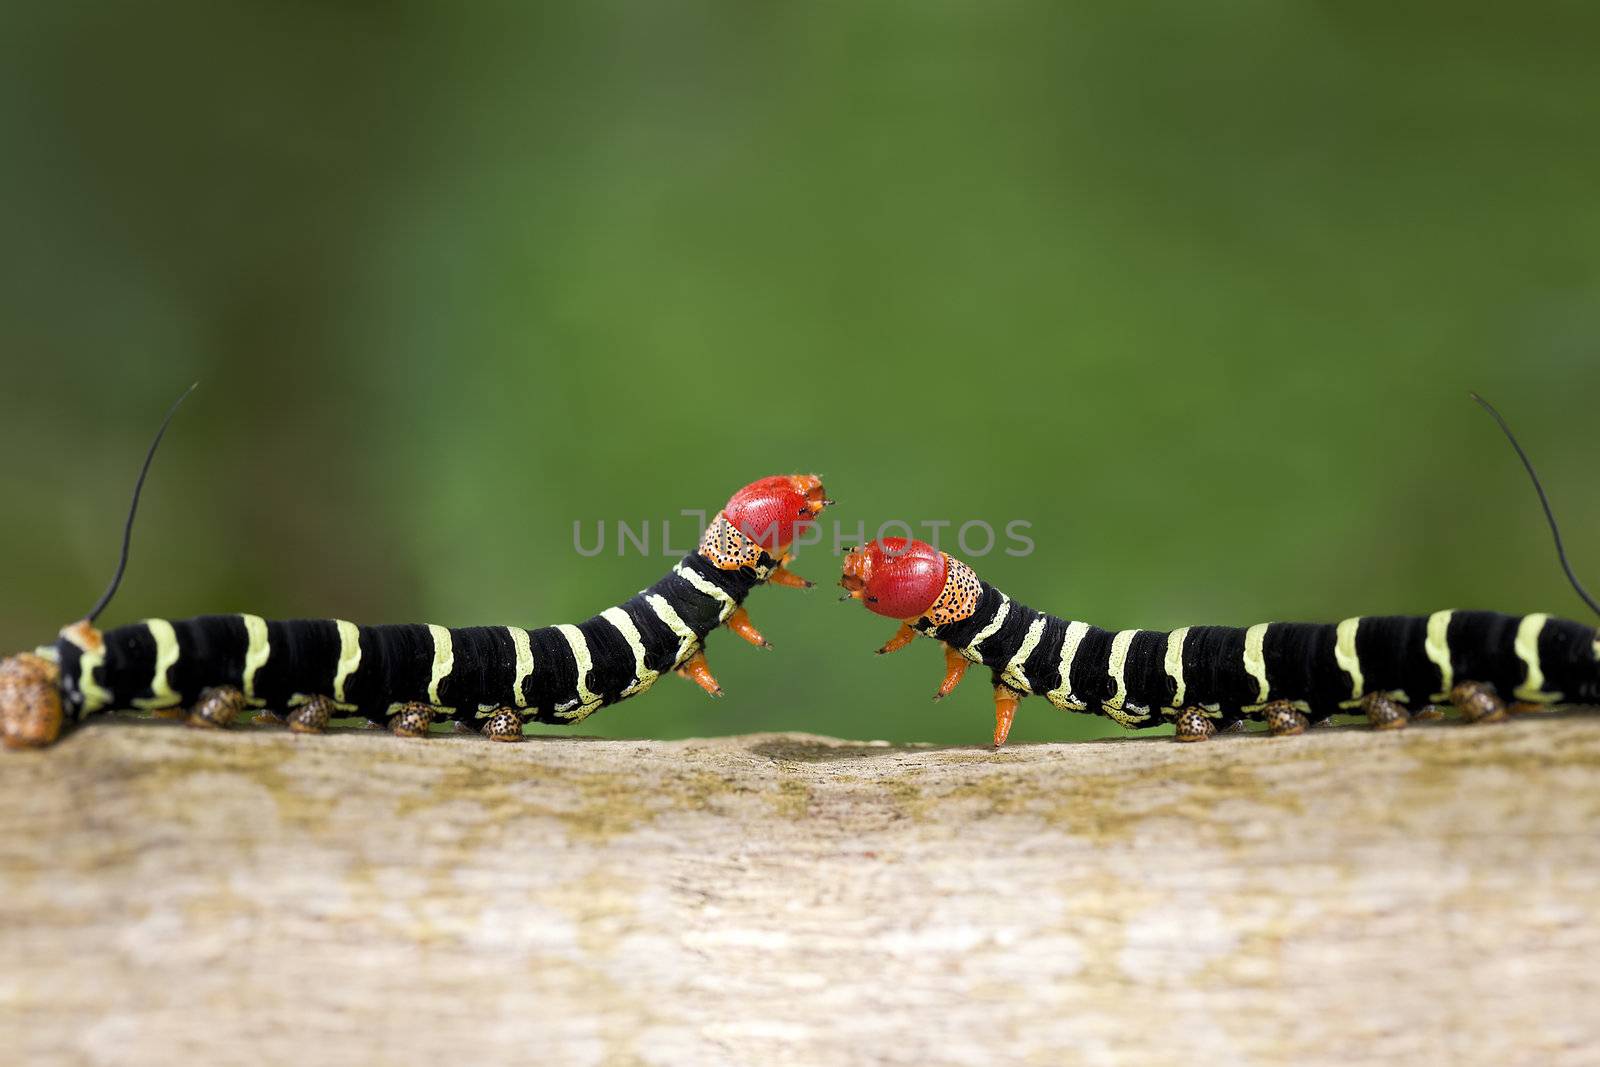 Caterpillar Duel by macropixel